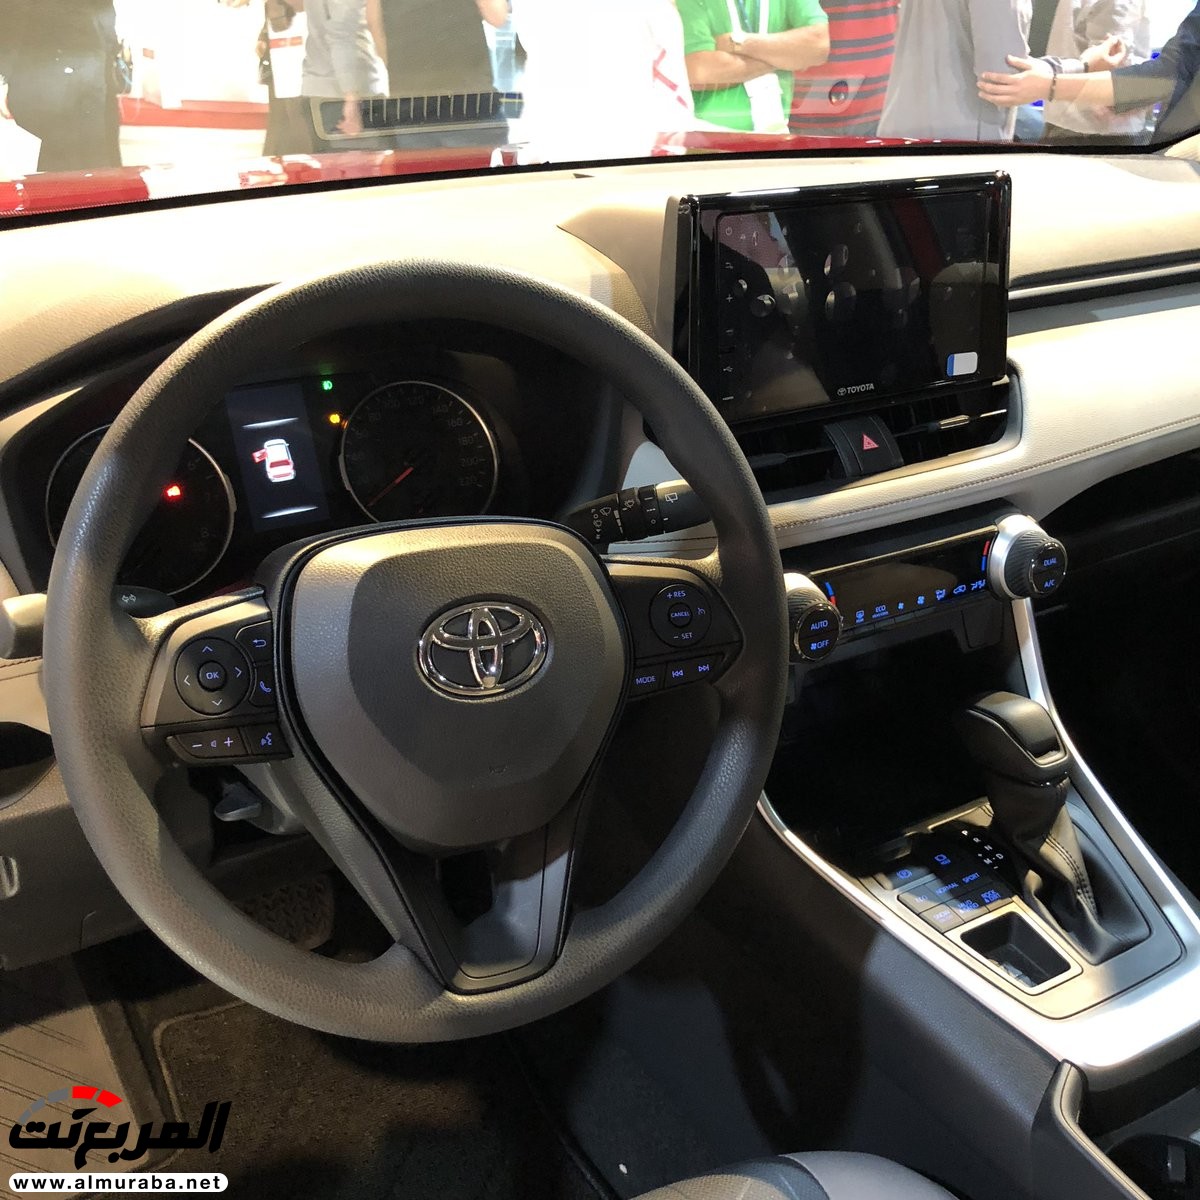 تويوتا راف فور 2019 الجديدة كلياً نسخة هايبرد وبنزين + اهم المواصفات Toyota Rav4 28